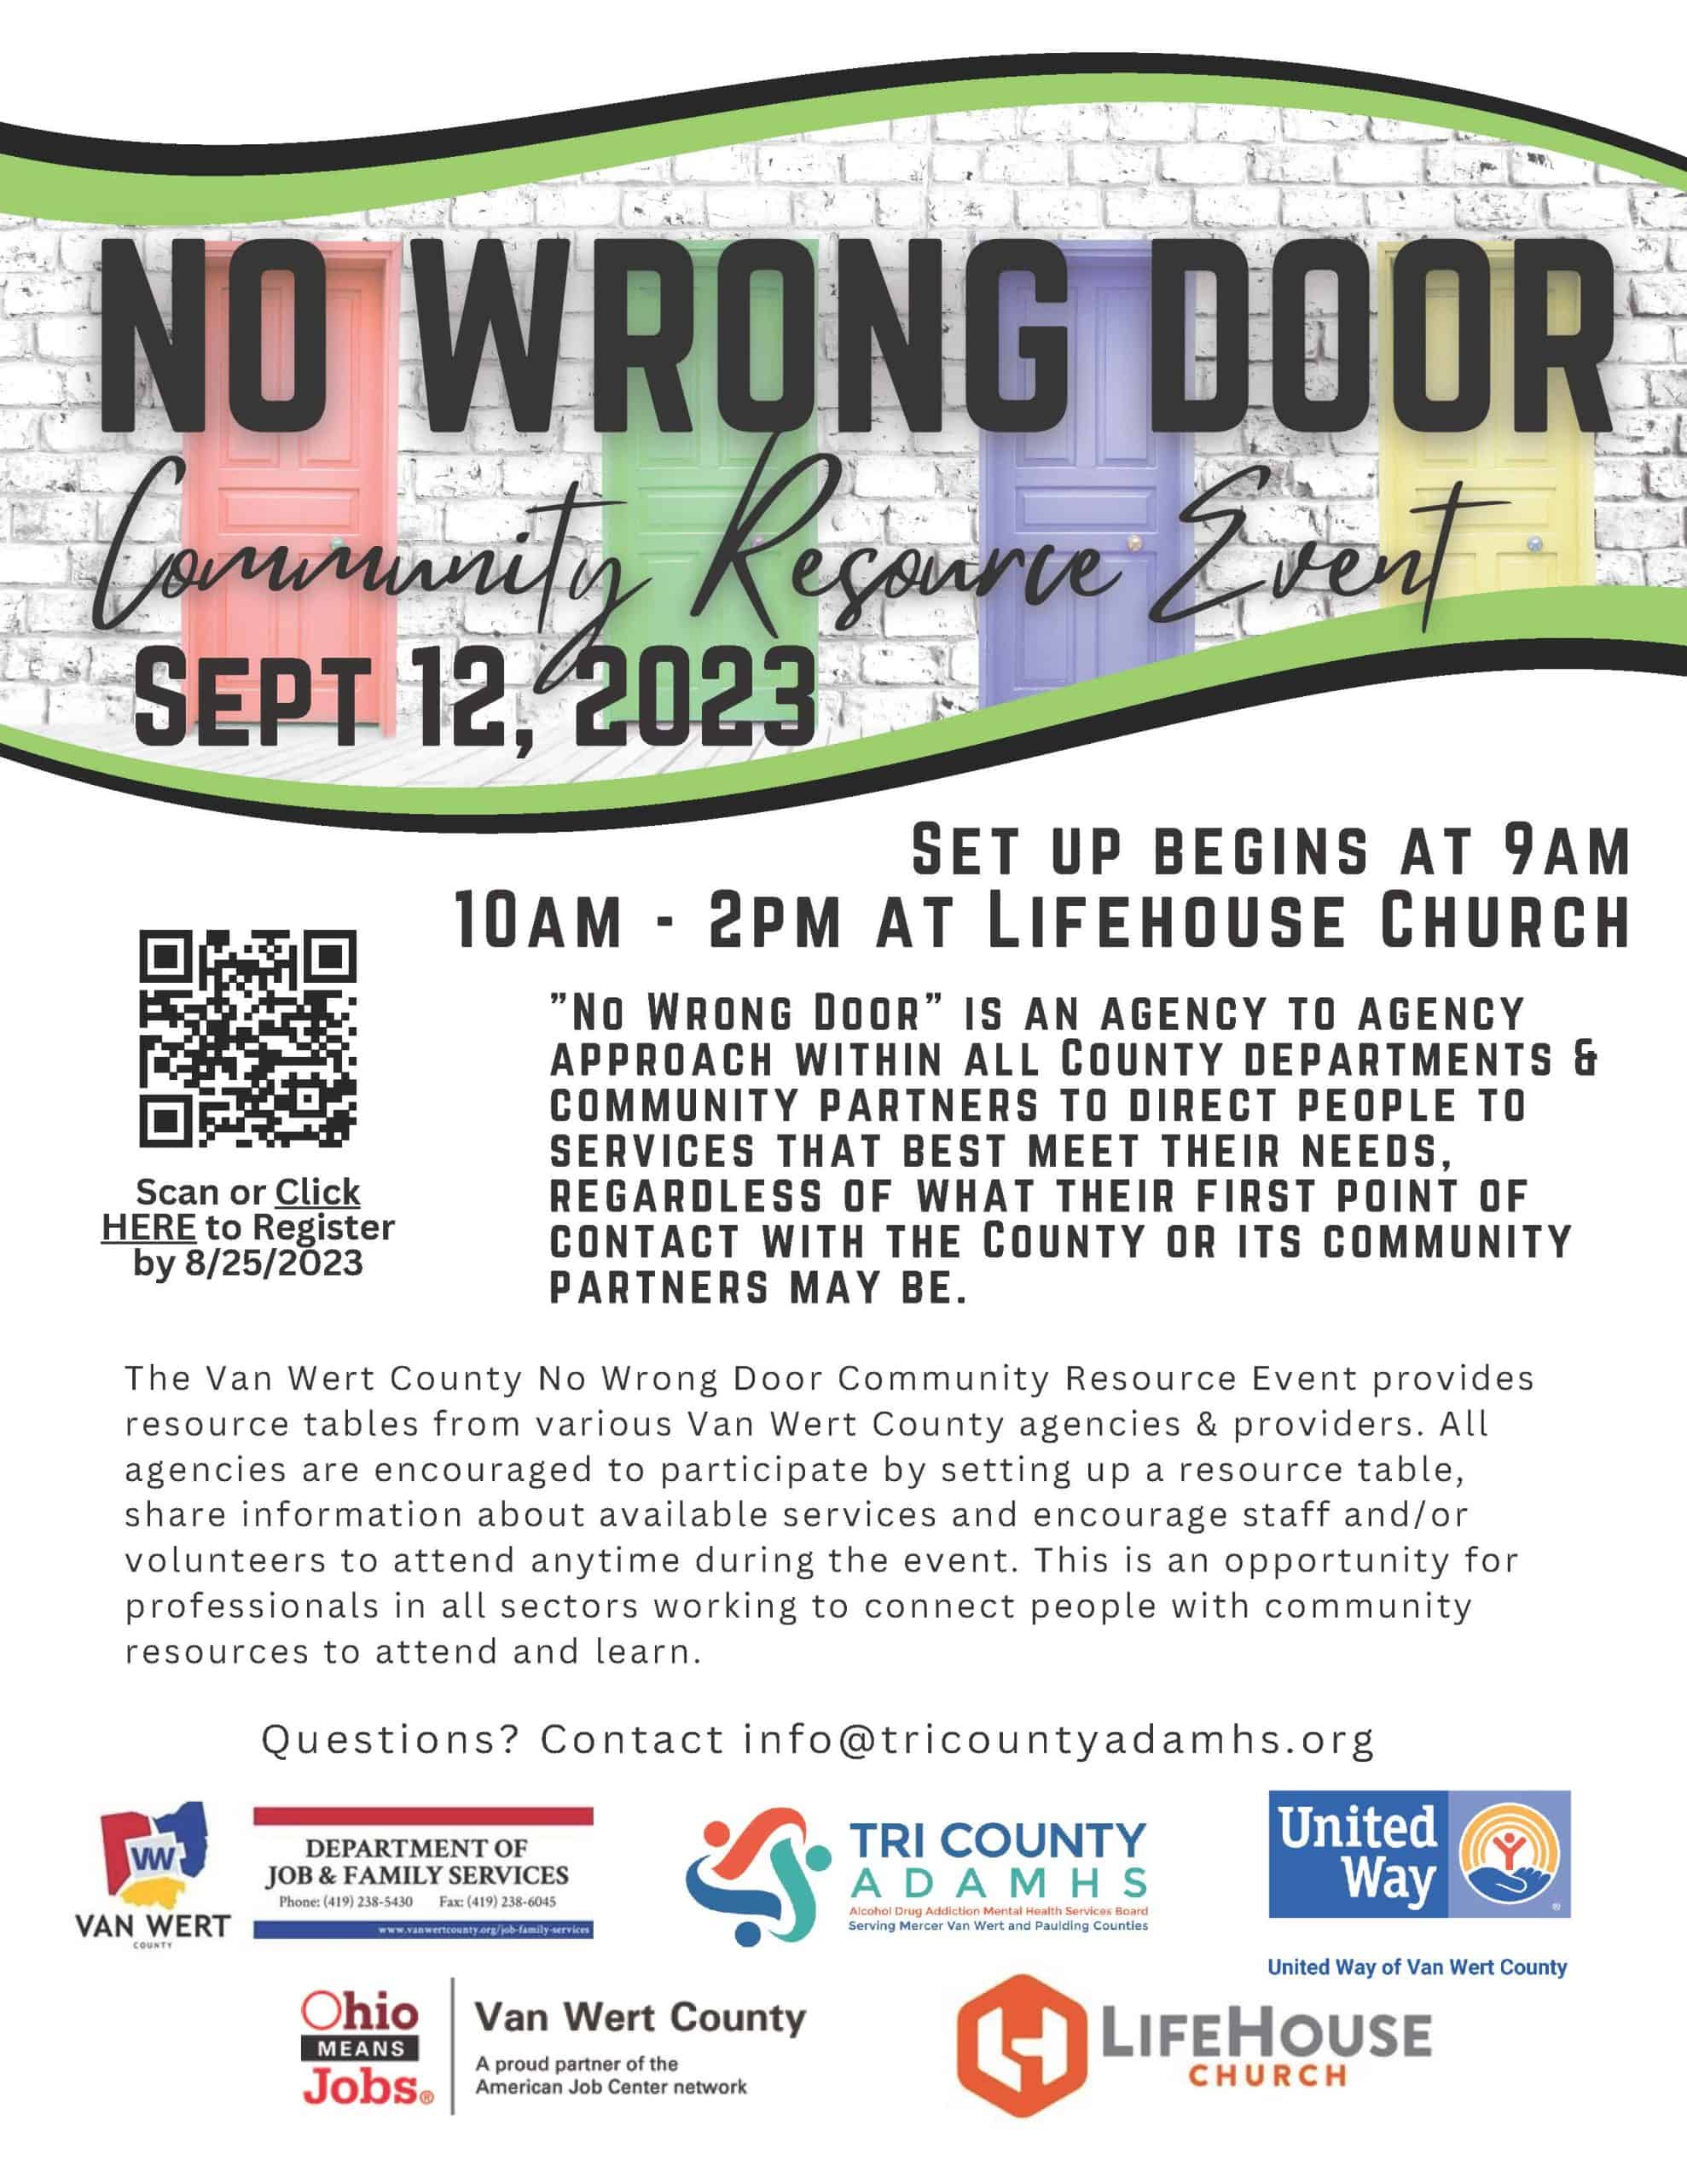 NO WRONG DOOR Community Resource Event